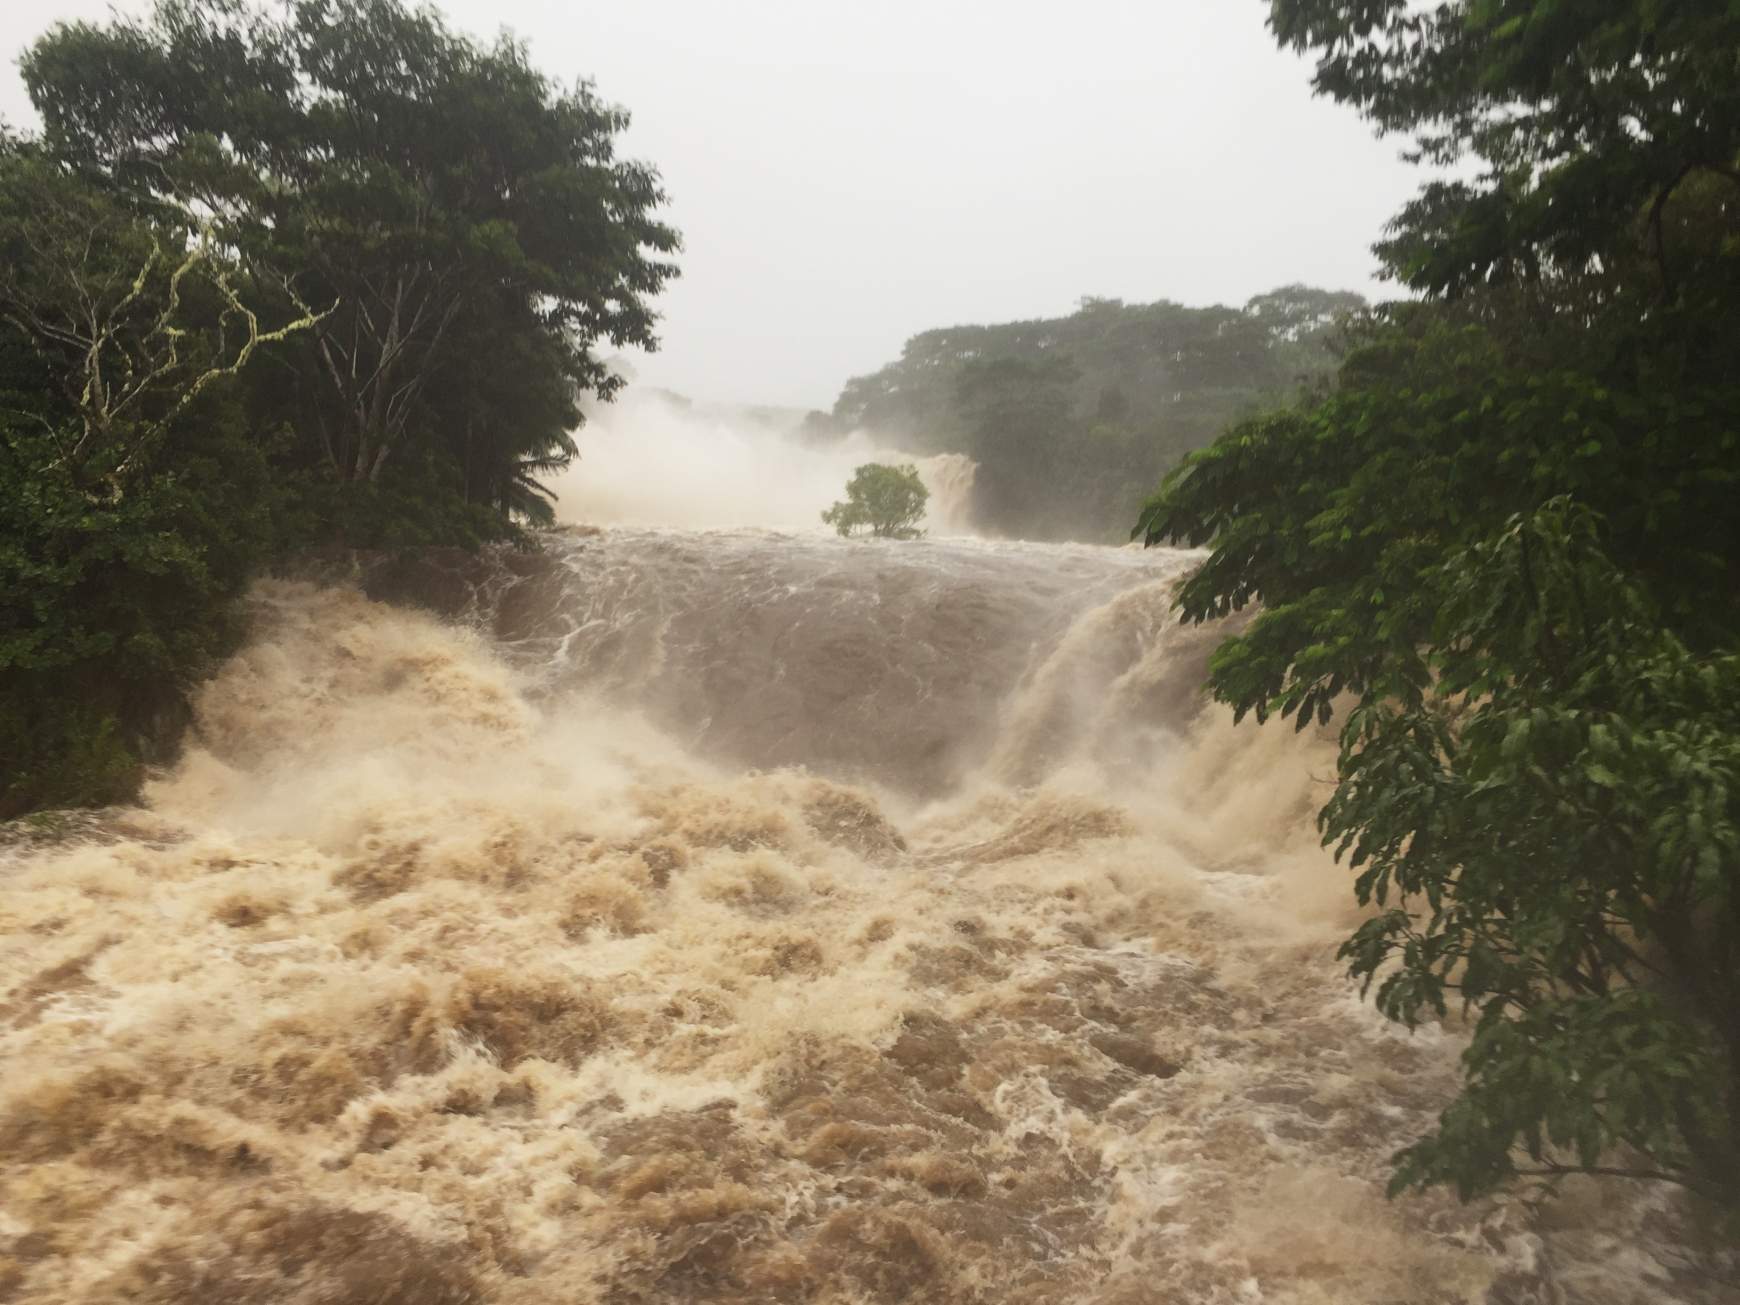 A Wailuku folyó is megáradt az esőzések következtében